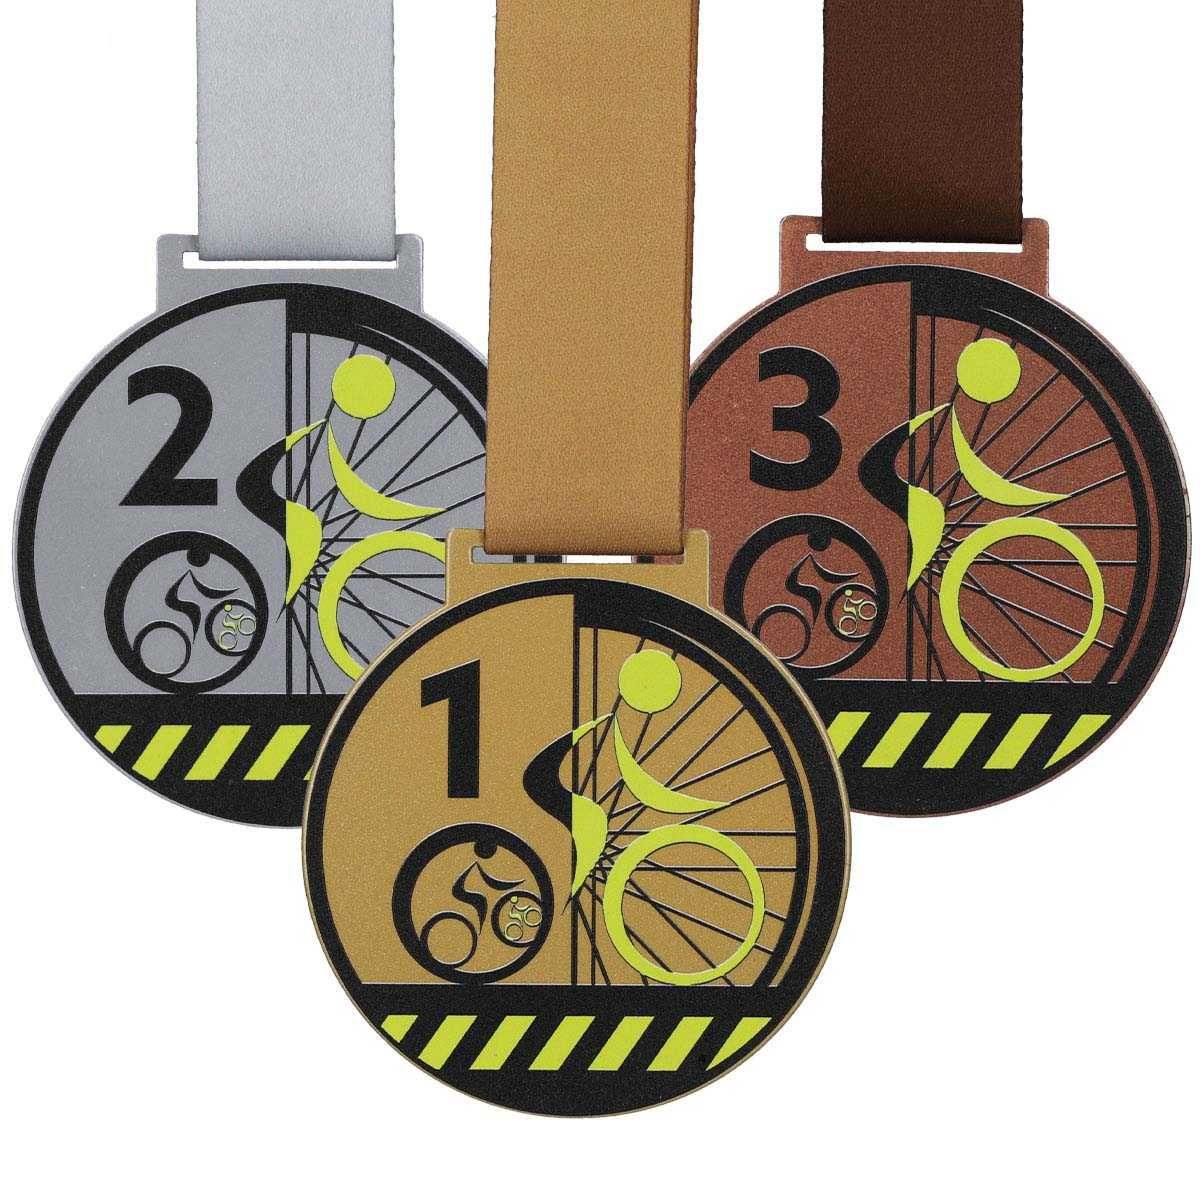 Medale dla rowerzysty z drukiem UV za 1, 2 i 3 miejsce